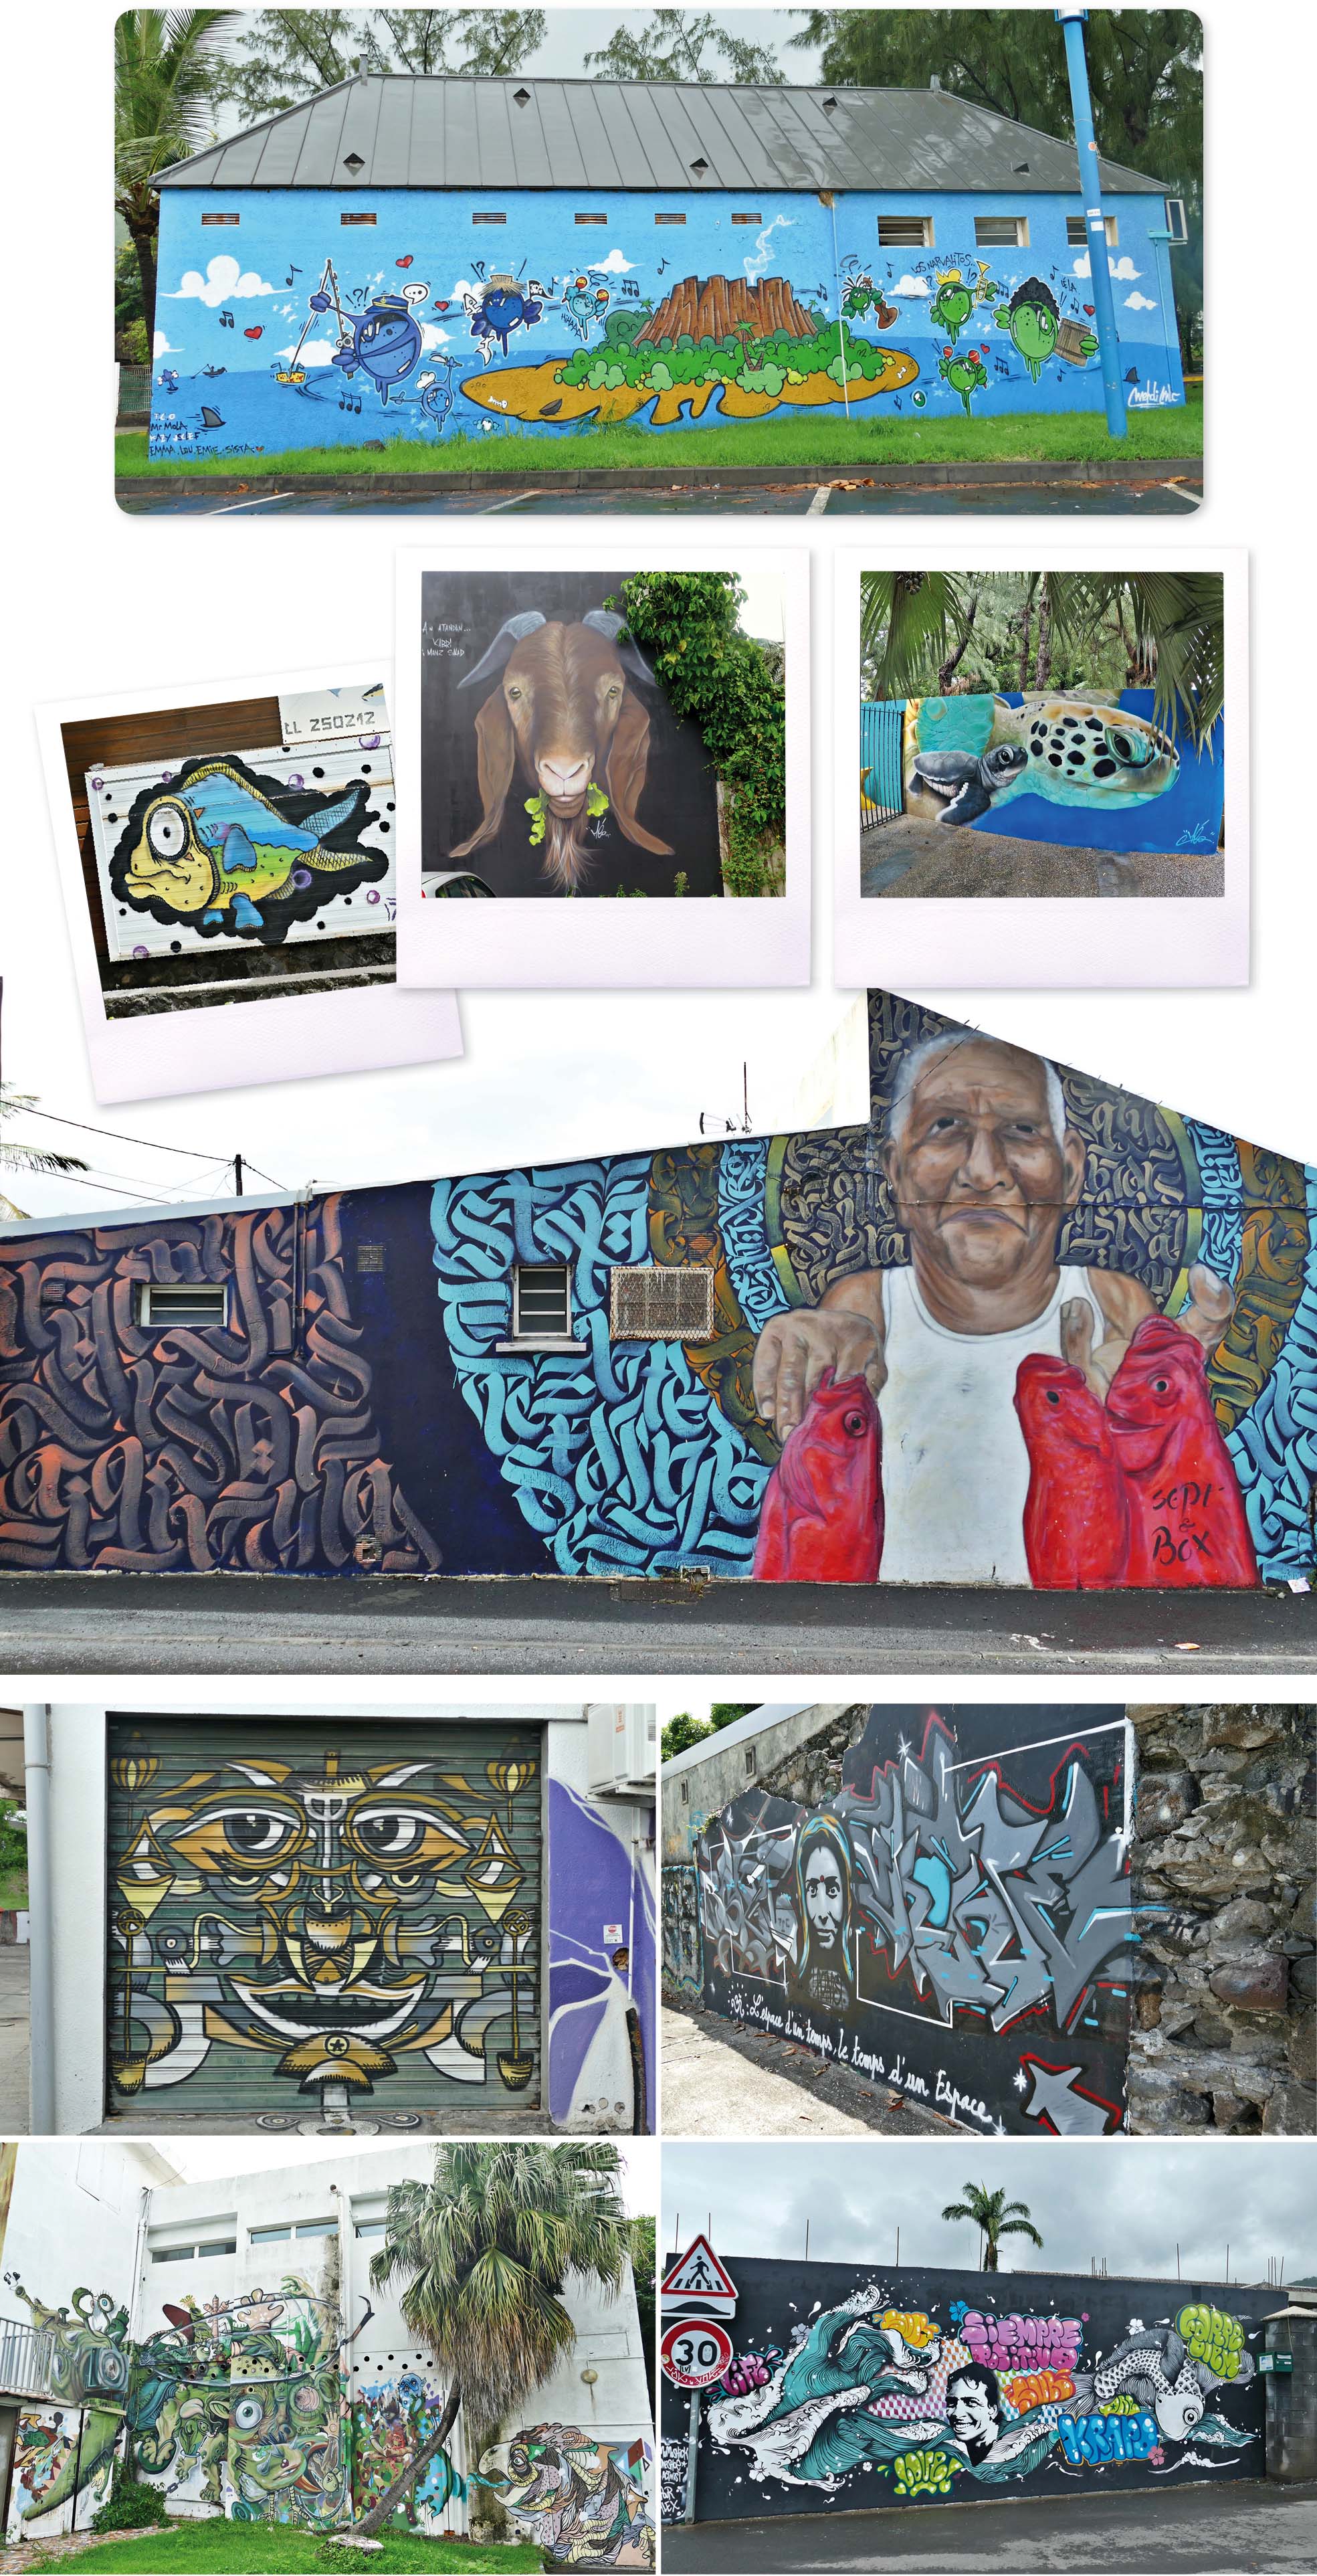 la réunion, la reunion, île, ile, jace, artiste, art, street art, art de rue, peinture, Graf, graffiti, fresque, tag, bombes, couleurs, personnage, dessin, croquis, voyage, blog